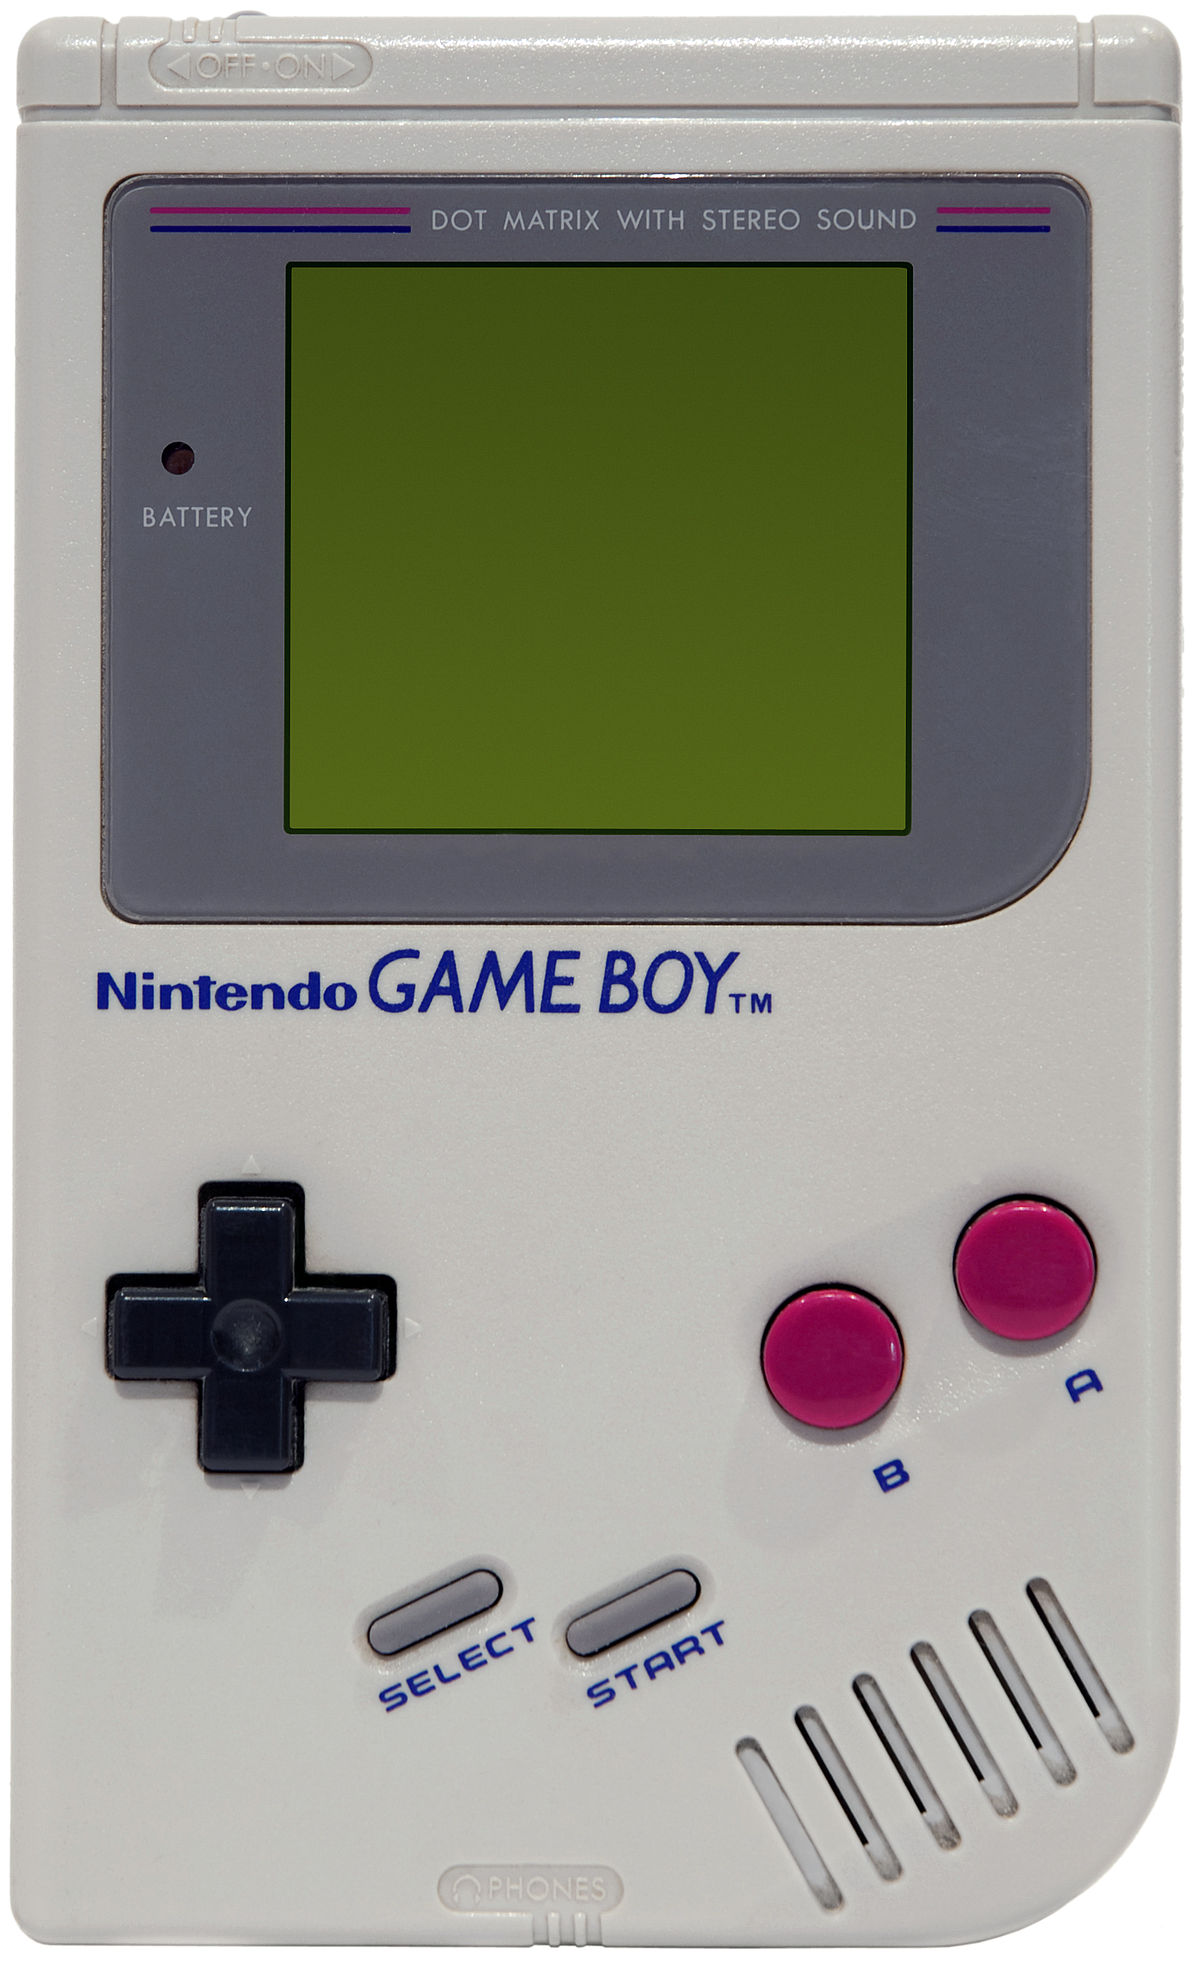 初代ゲームボーイ と思われるものが商標登録されていたことが判明 Nintendo Switch 情報ブログ